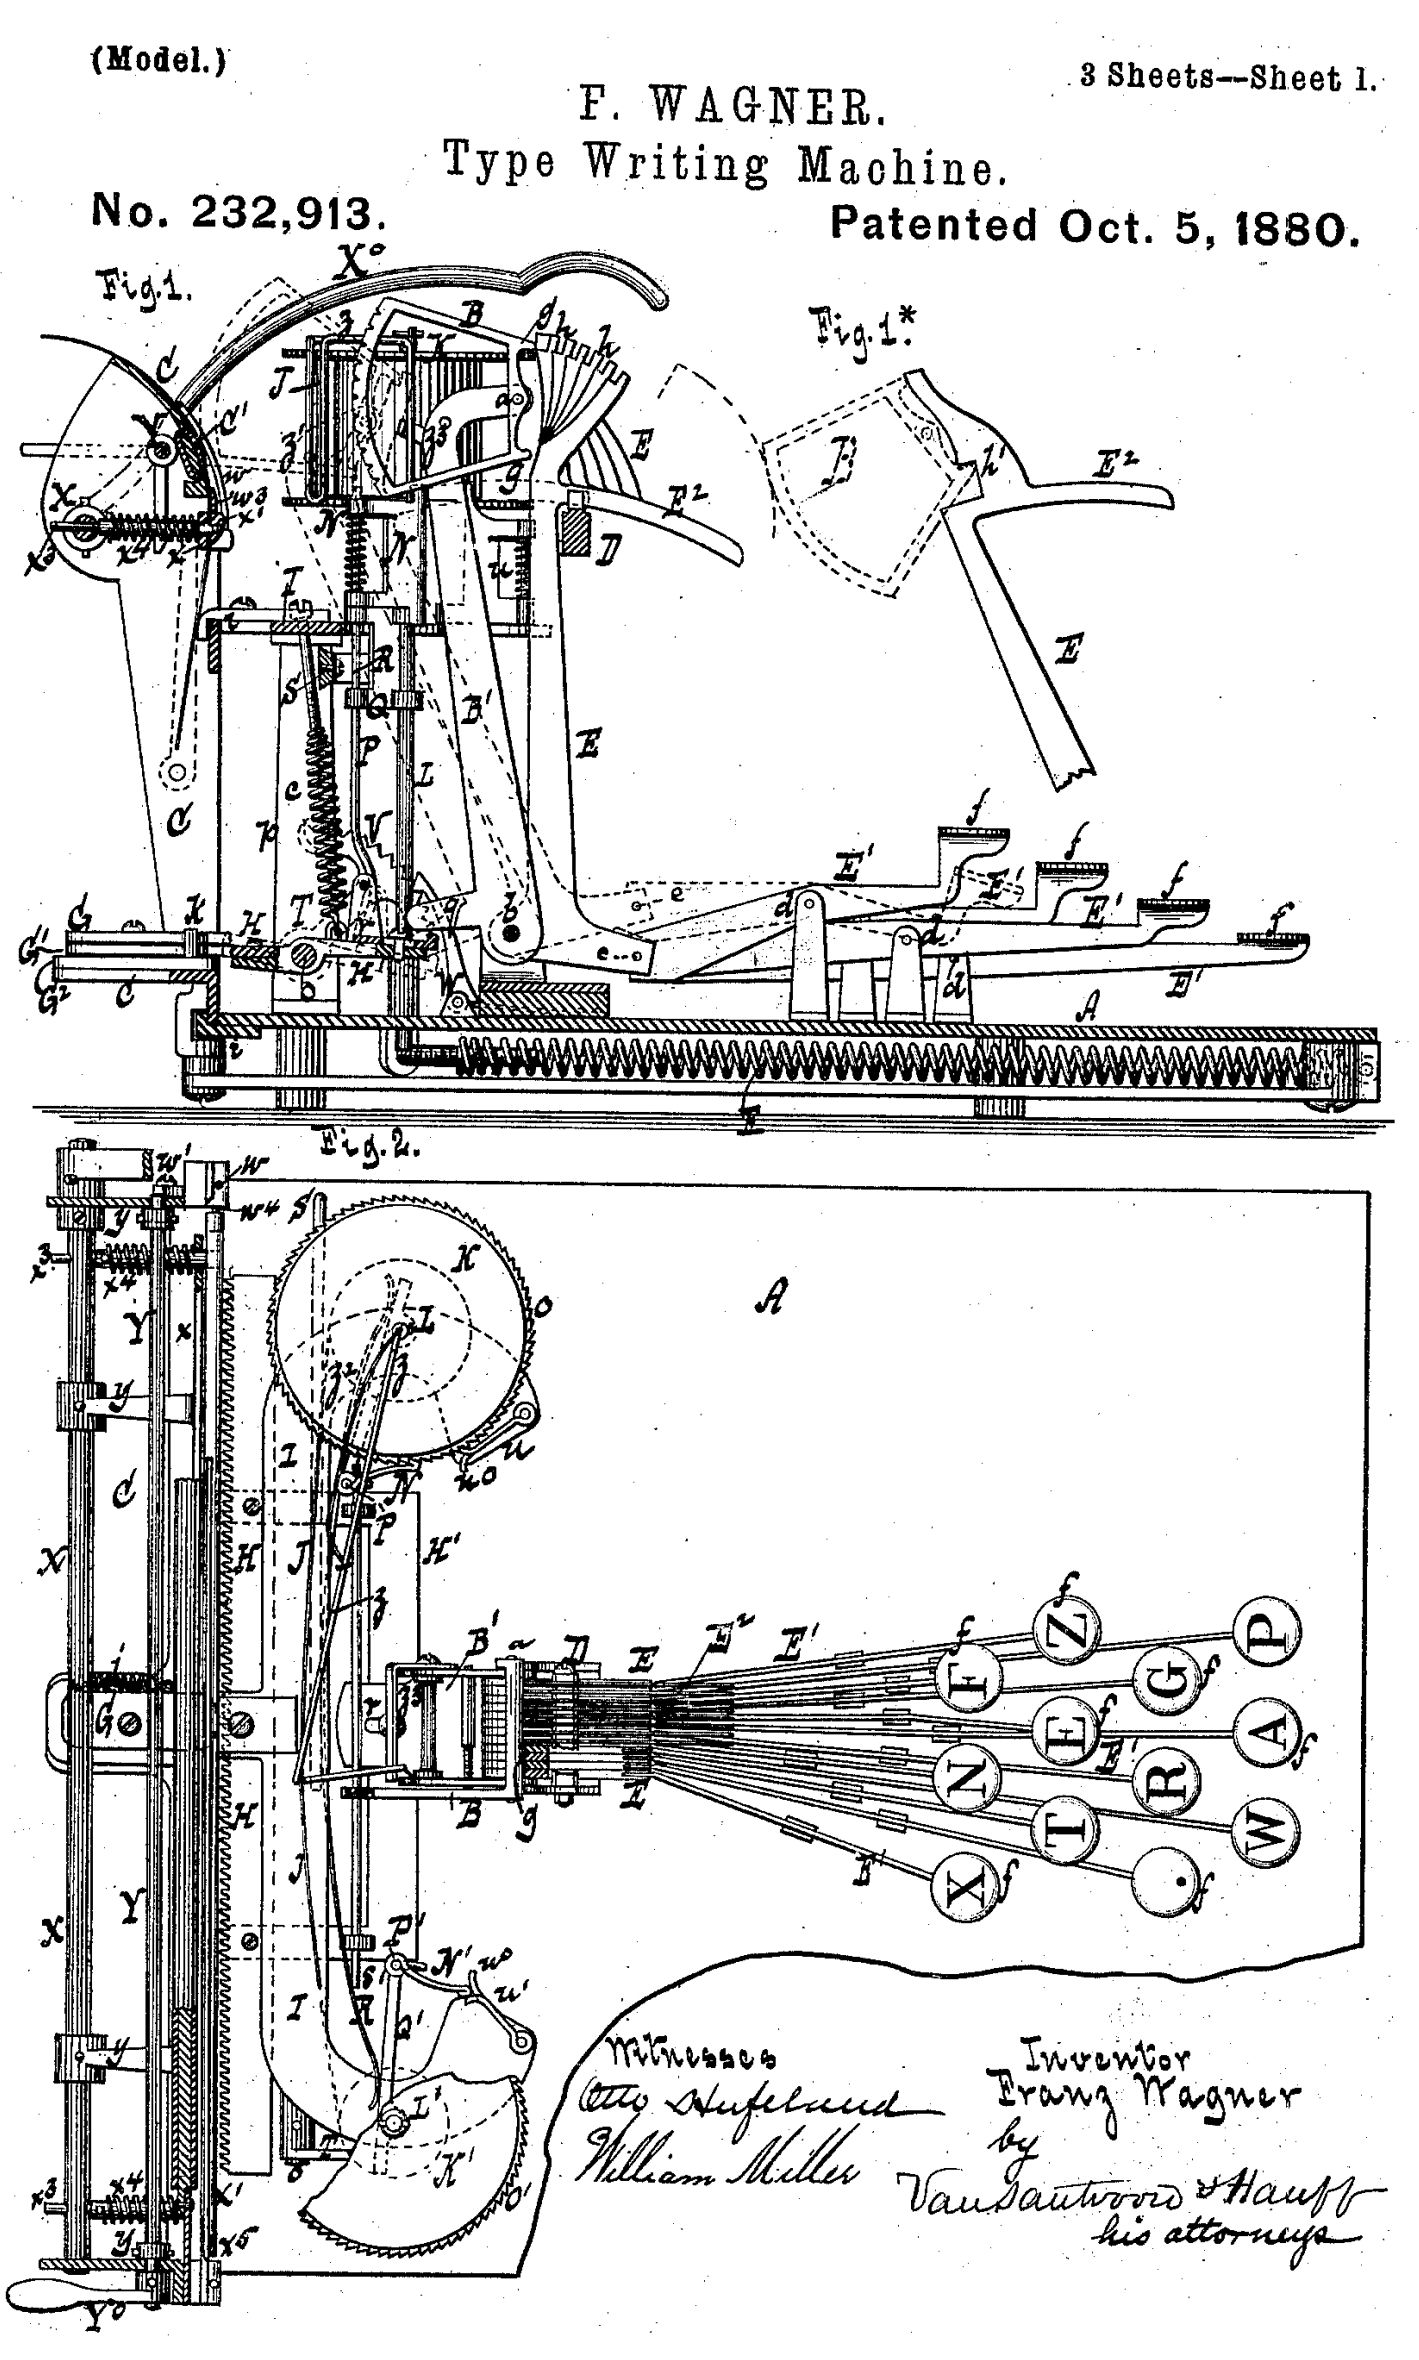 ワーグナーが設計した縦型タイプシャトル式タイプライター（U.S. Patent No.232913